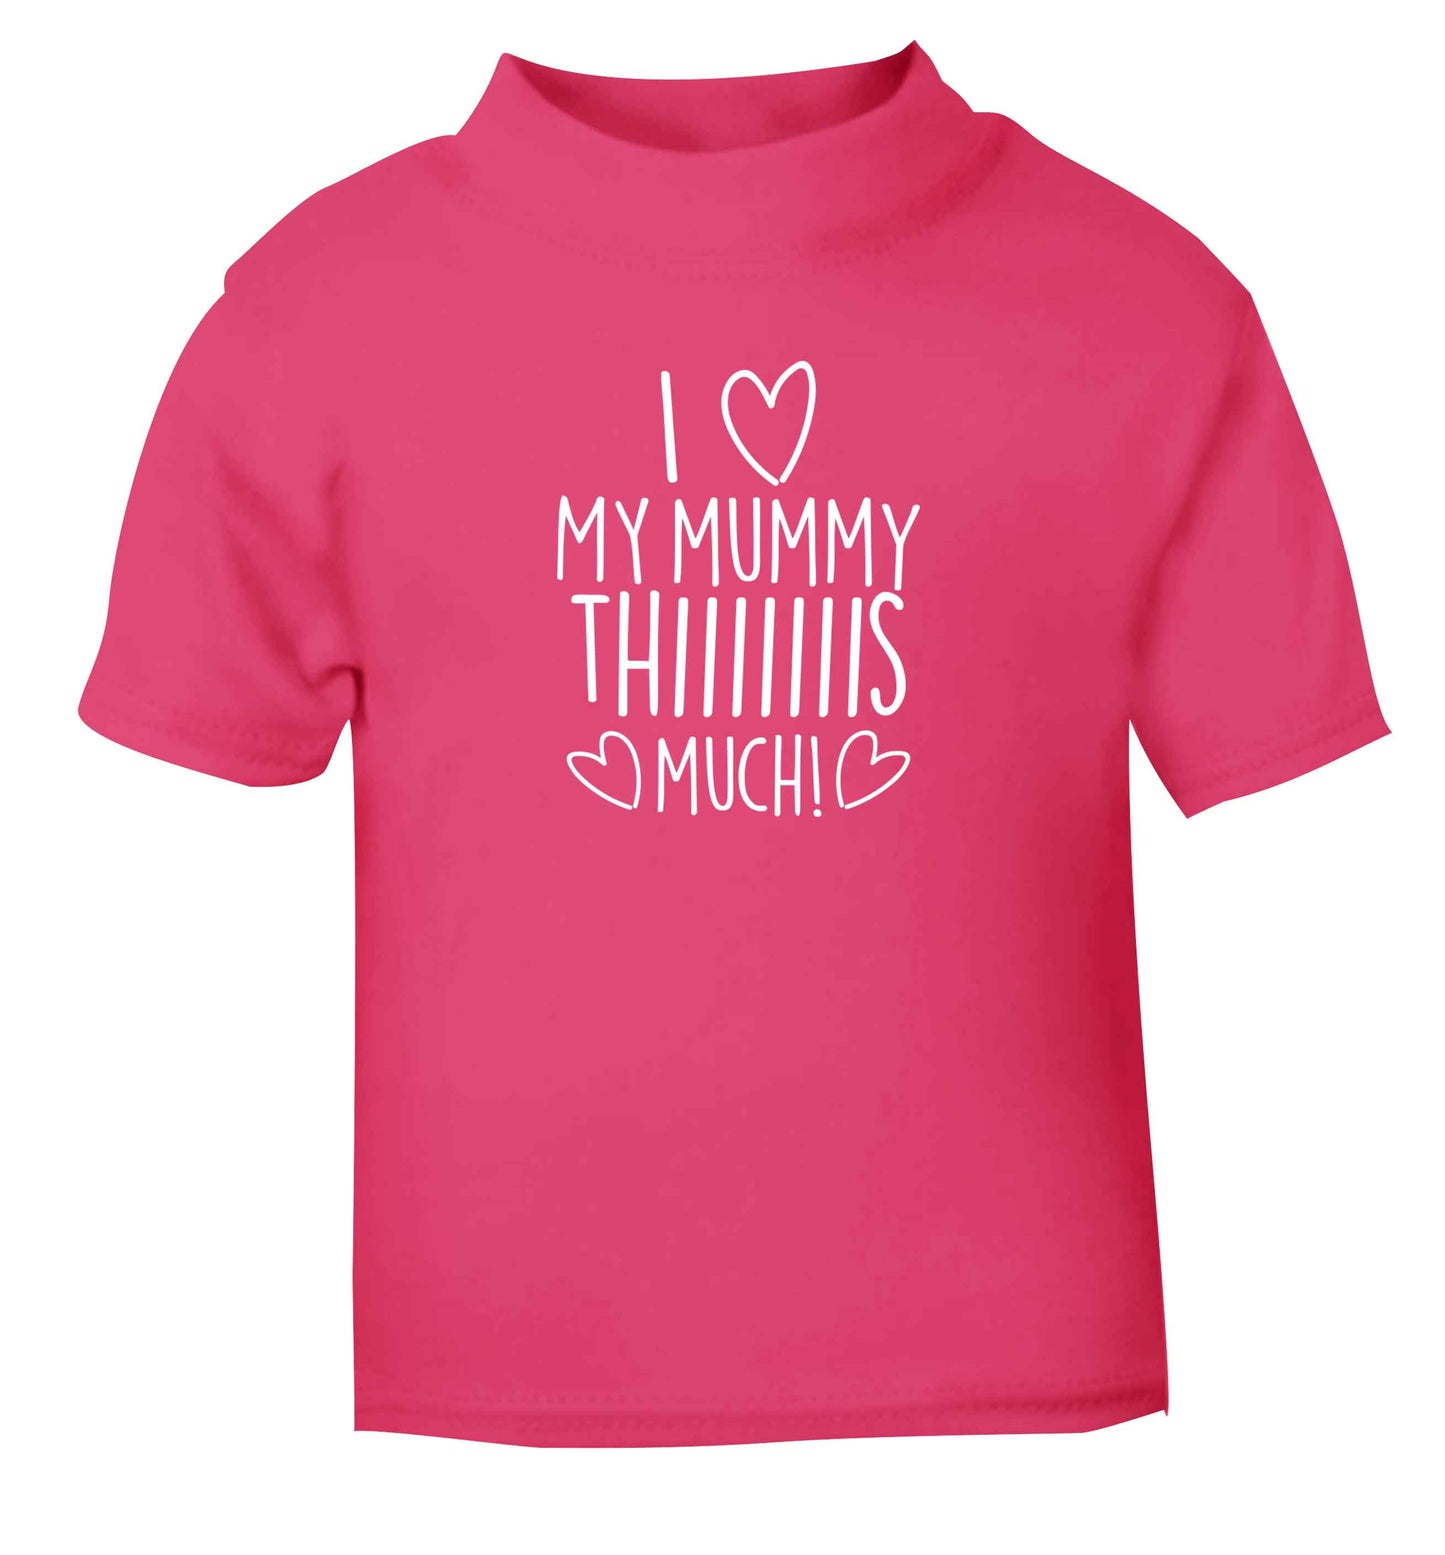 I love my mummy thiiiiis much! pink baby toddler Tshirt 2 Years